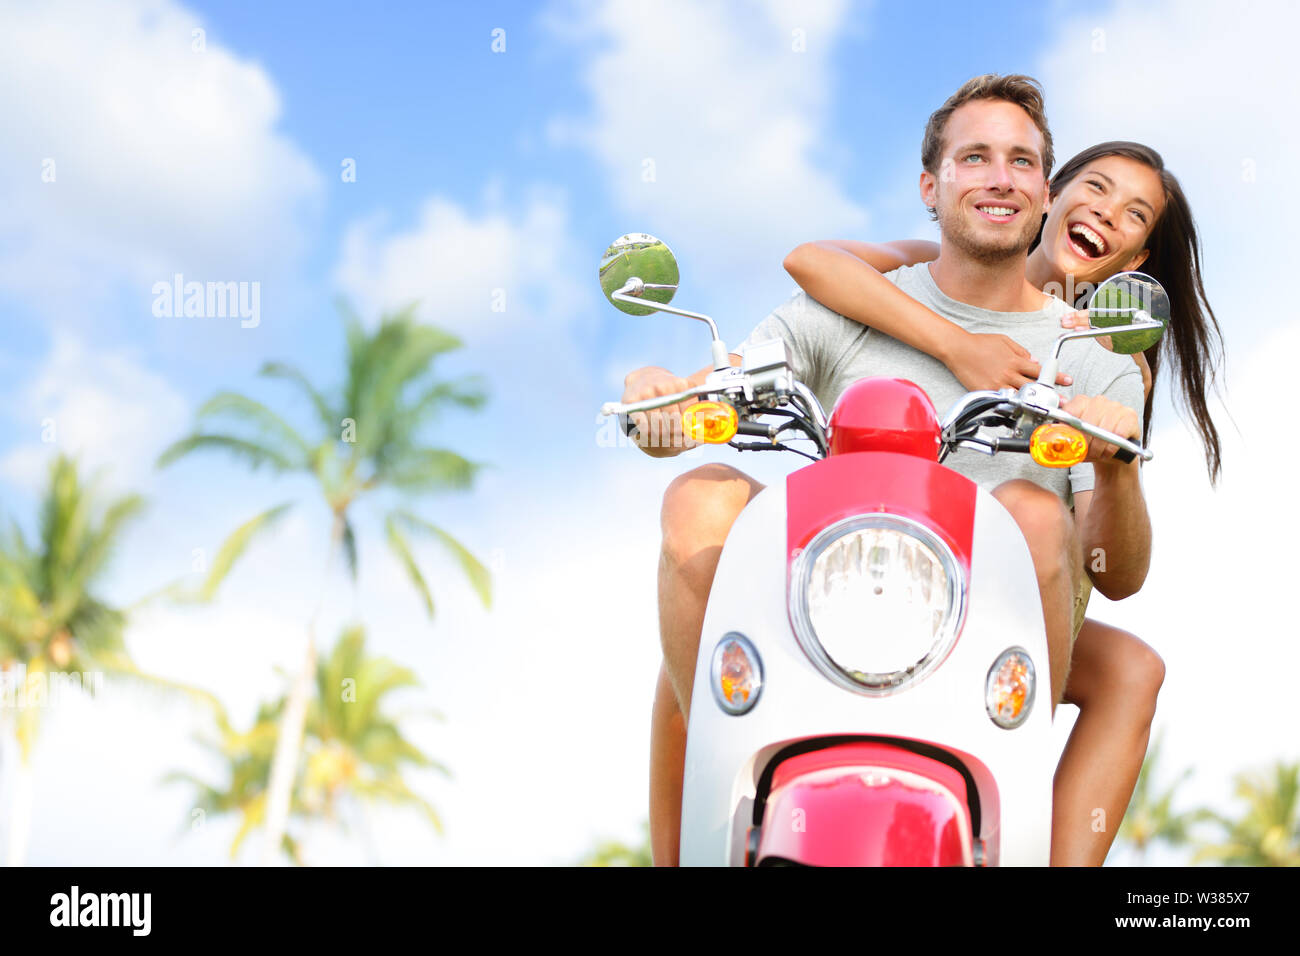 Kostenloses junges Paar auf Scooter glücklich im Sommer Urlaub Ferien.  Multiethnischen fröhliches Paar Spaß fahren Roller zusammen im Freien.  Lifestyle Bild mit kaukasischen Mann, asiatische Frau Stockfotografie -  Alamy